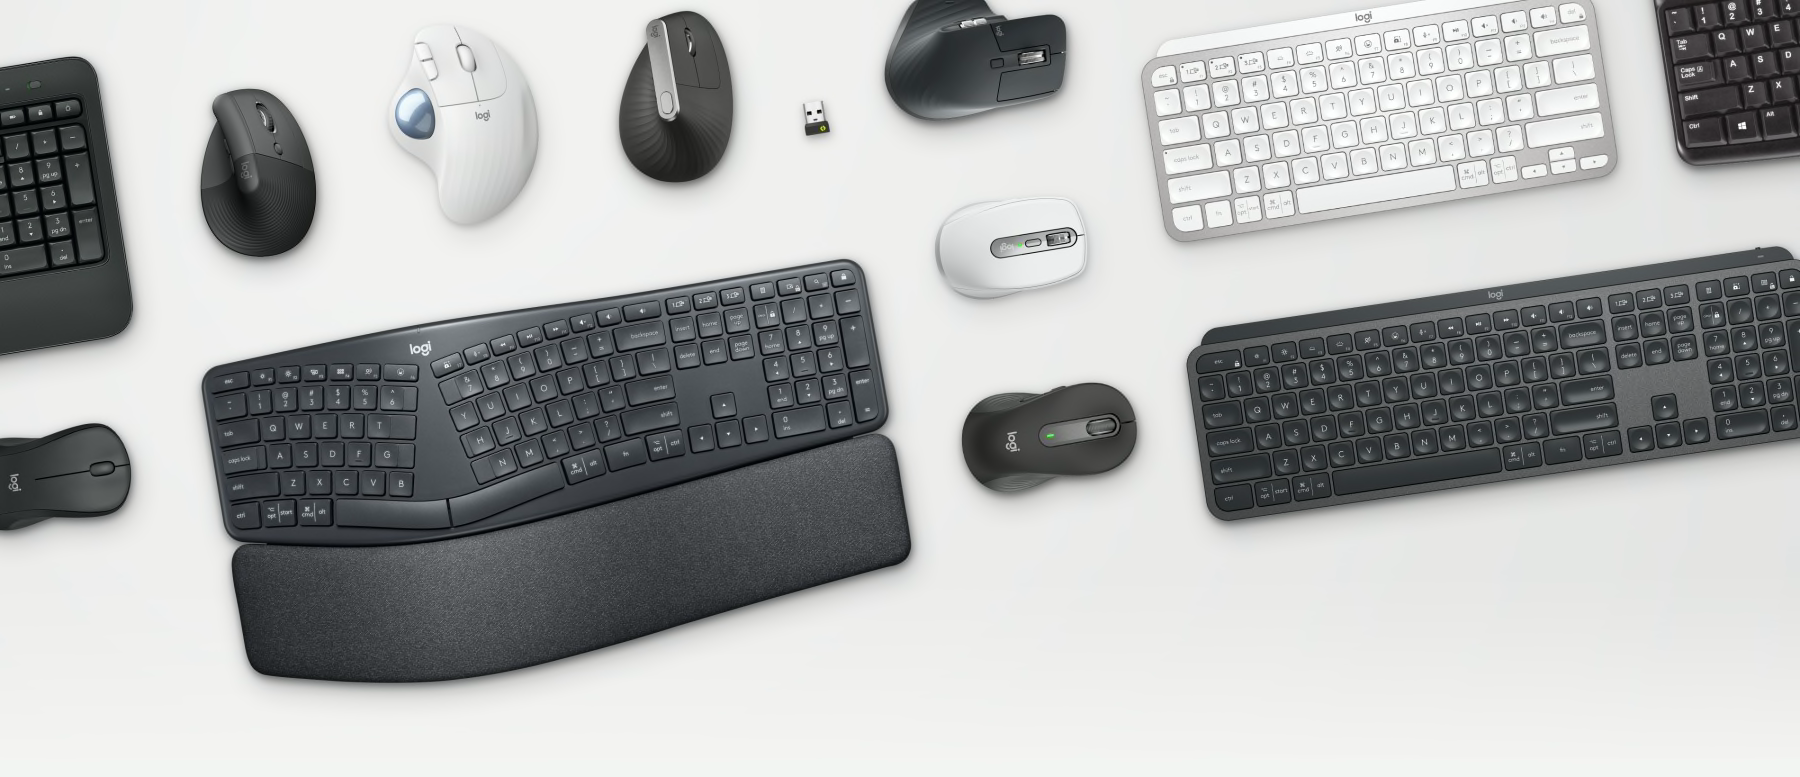 Bedriftsverktøy – Ergo mus og tastaturer på bord